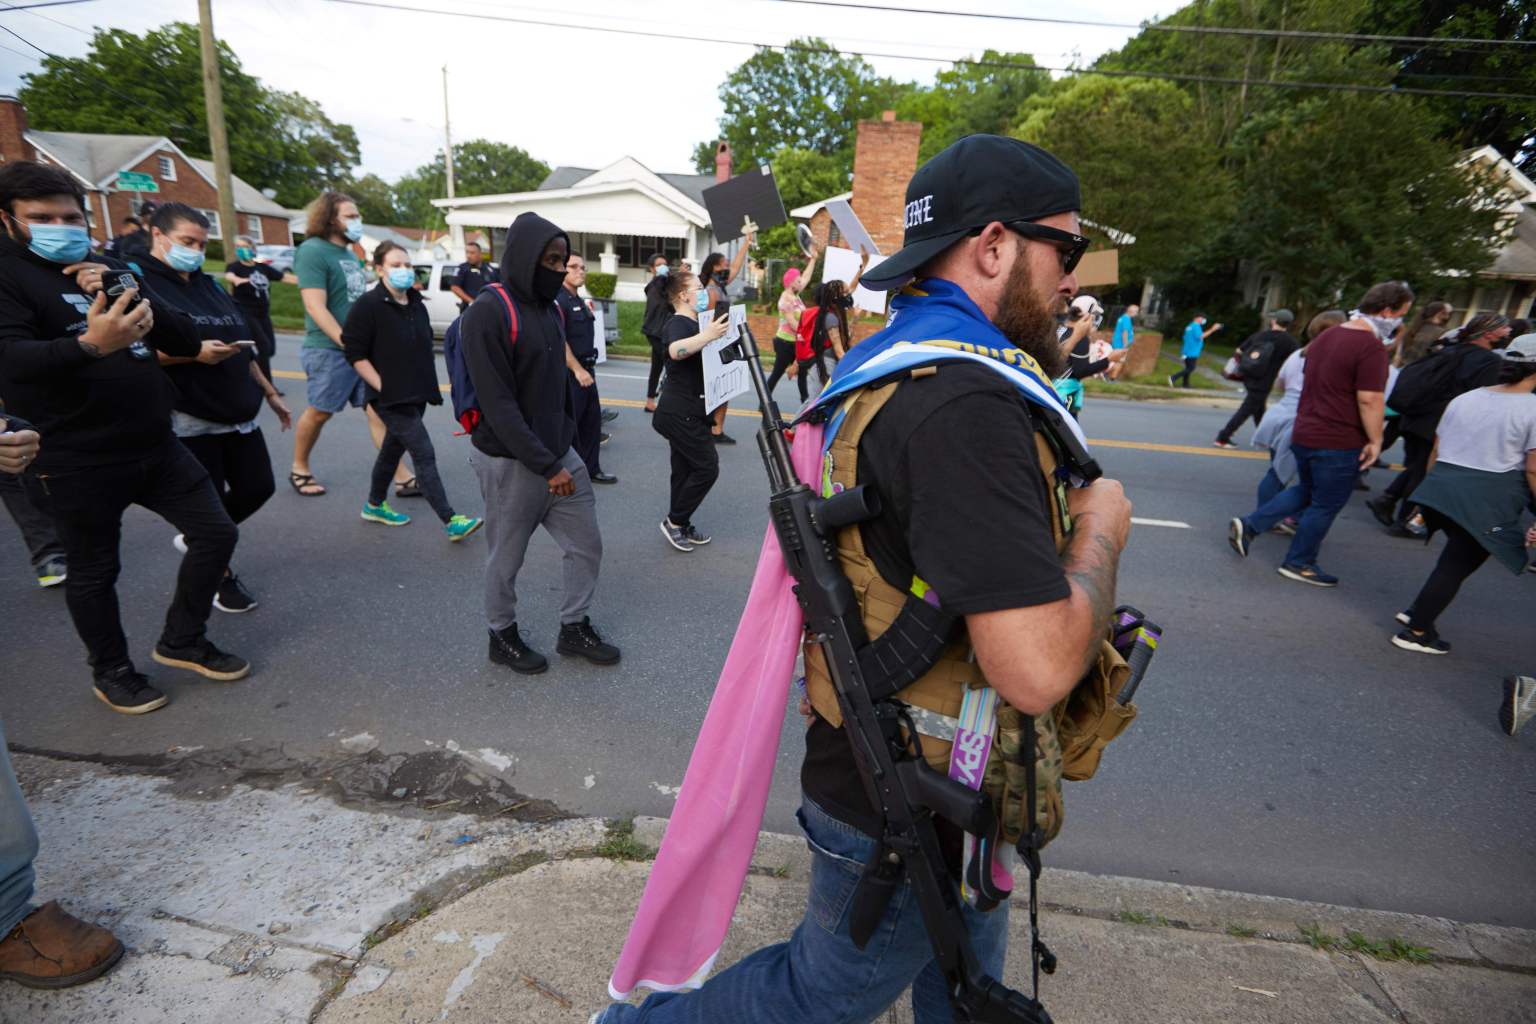 Los grupos armados de extrema derecha están en la mira de las autoridades de seguridad de Estados Unidos. (Foto Prensa Libre: AFP)